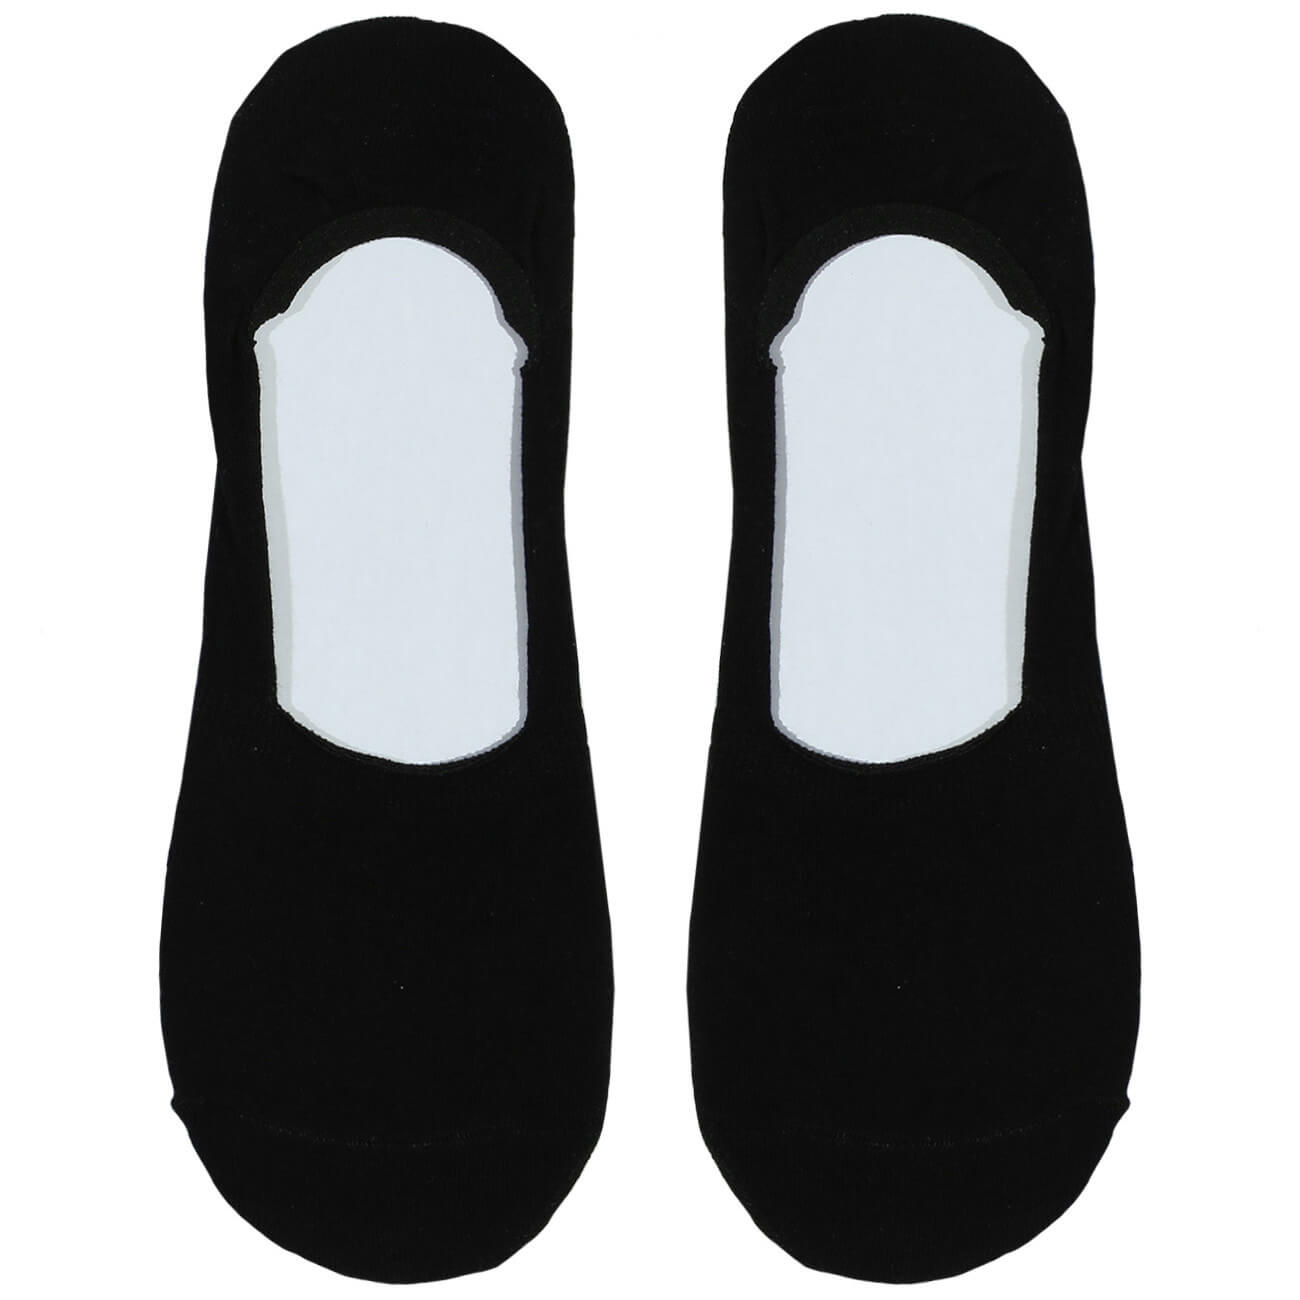 Носки-следки мужские, р. 39-42, хлопок/полиэстер, черные, Basic носки следки мужские р 39 42 хлопок полиэстер черные basic